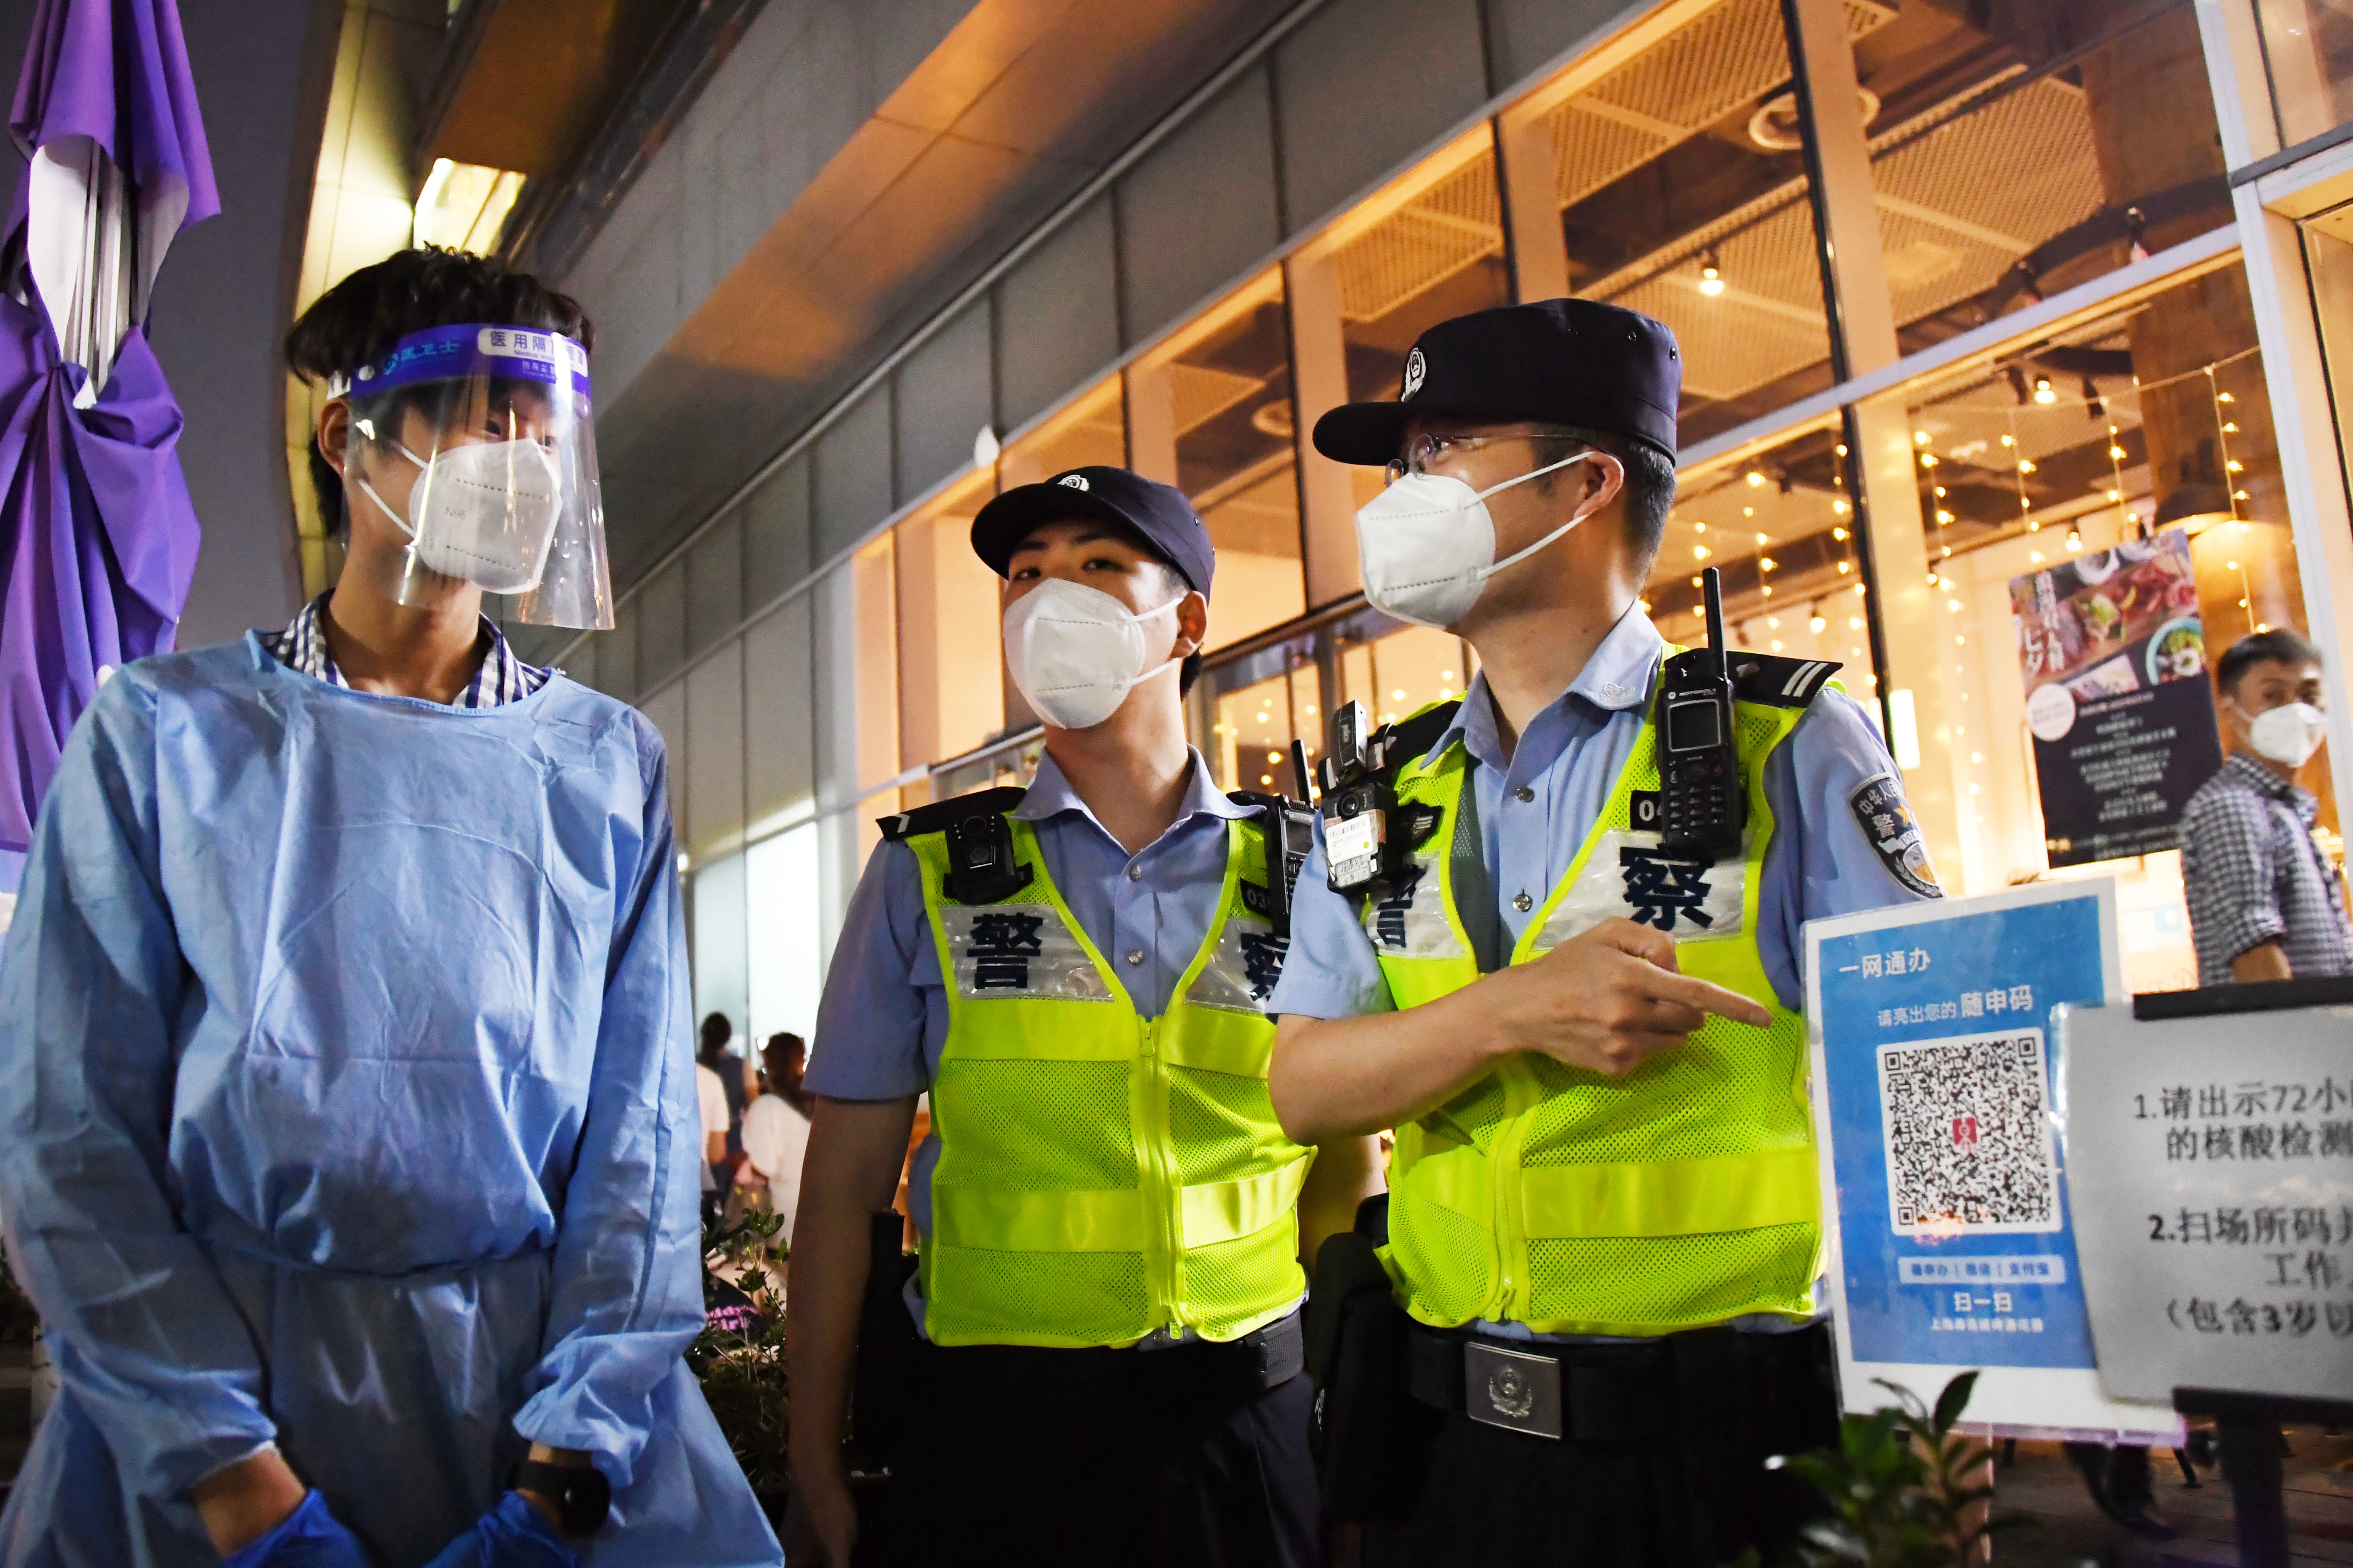 讓各類隱患無處藏身
，楊浦警方持續開展夏季打擊整治“百日行動”